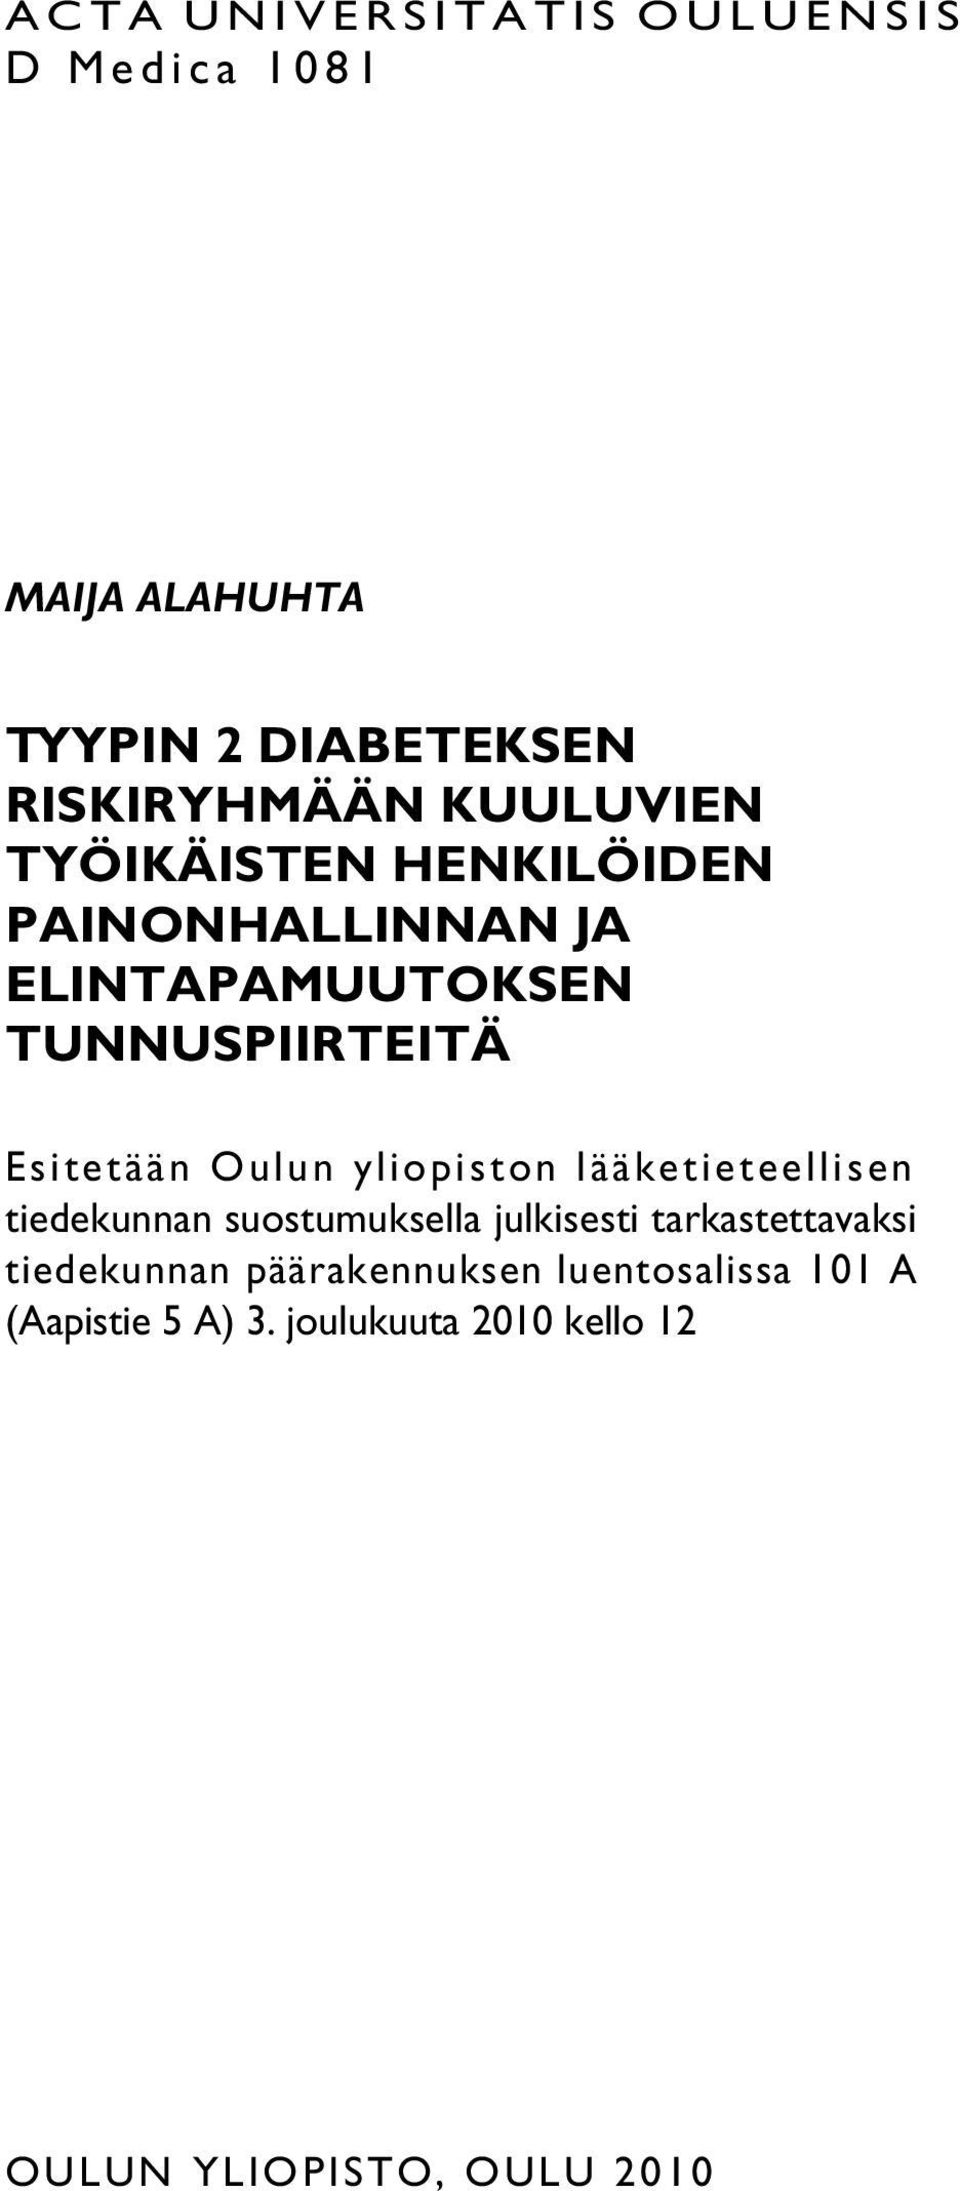 Oulun yliopiston lääketieteellisen tiedekunnan suostumuksella julkisesti tarkastettavaksi